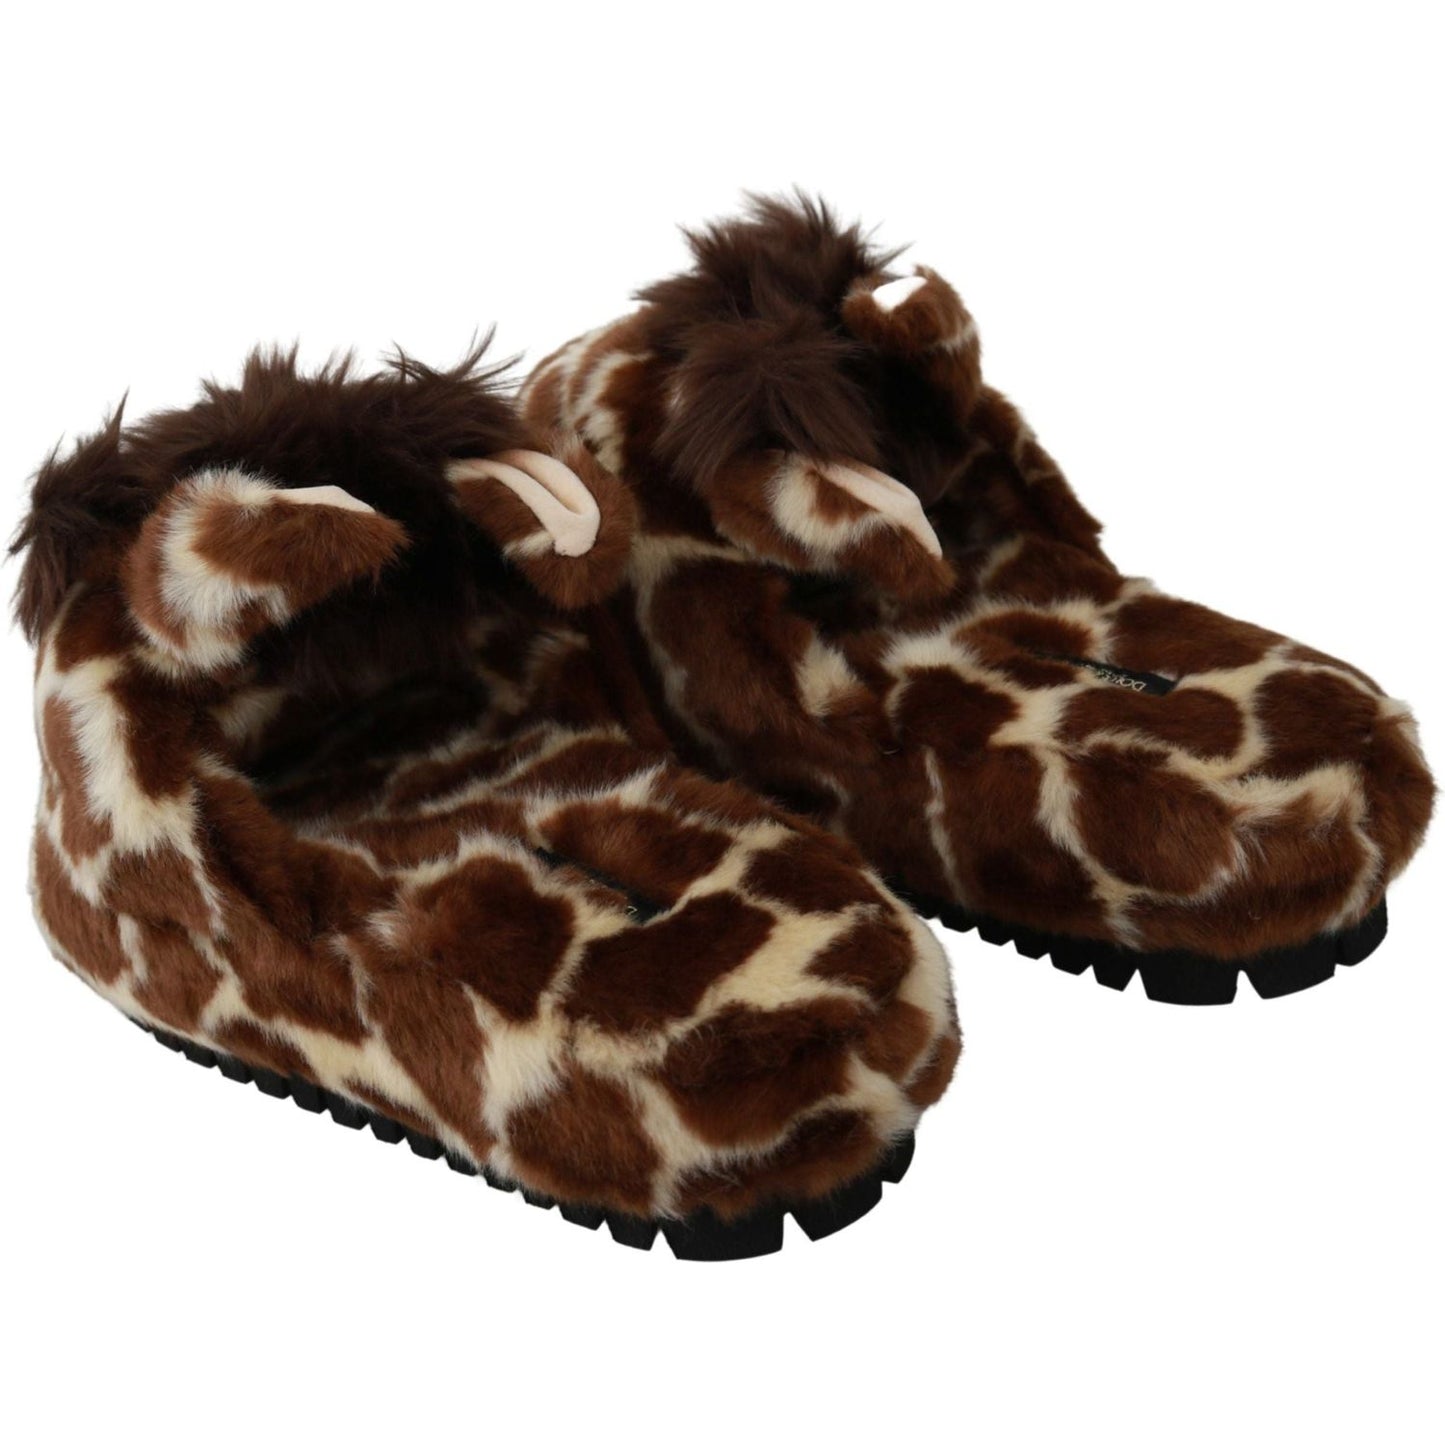 Dolce & Gabbana Elegant Giraffe Pattern Slides for Sophisticated Comfort brown-giraffe-slippers-flats-sandals-shoes IMG_1592-scaled-7609cf0c-2e2.jpg